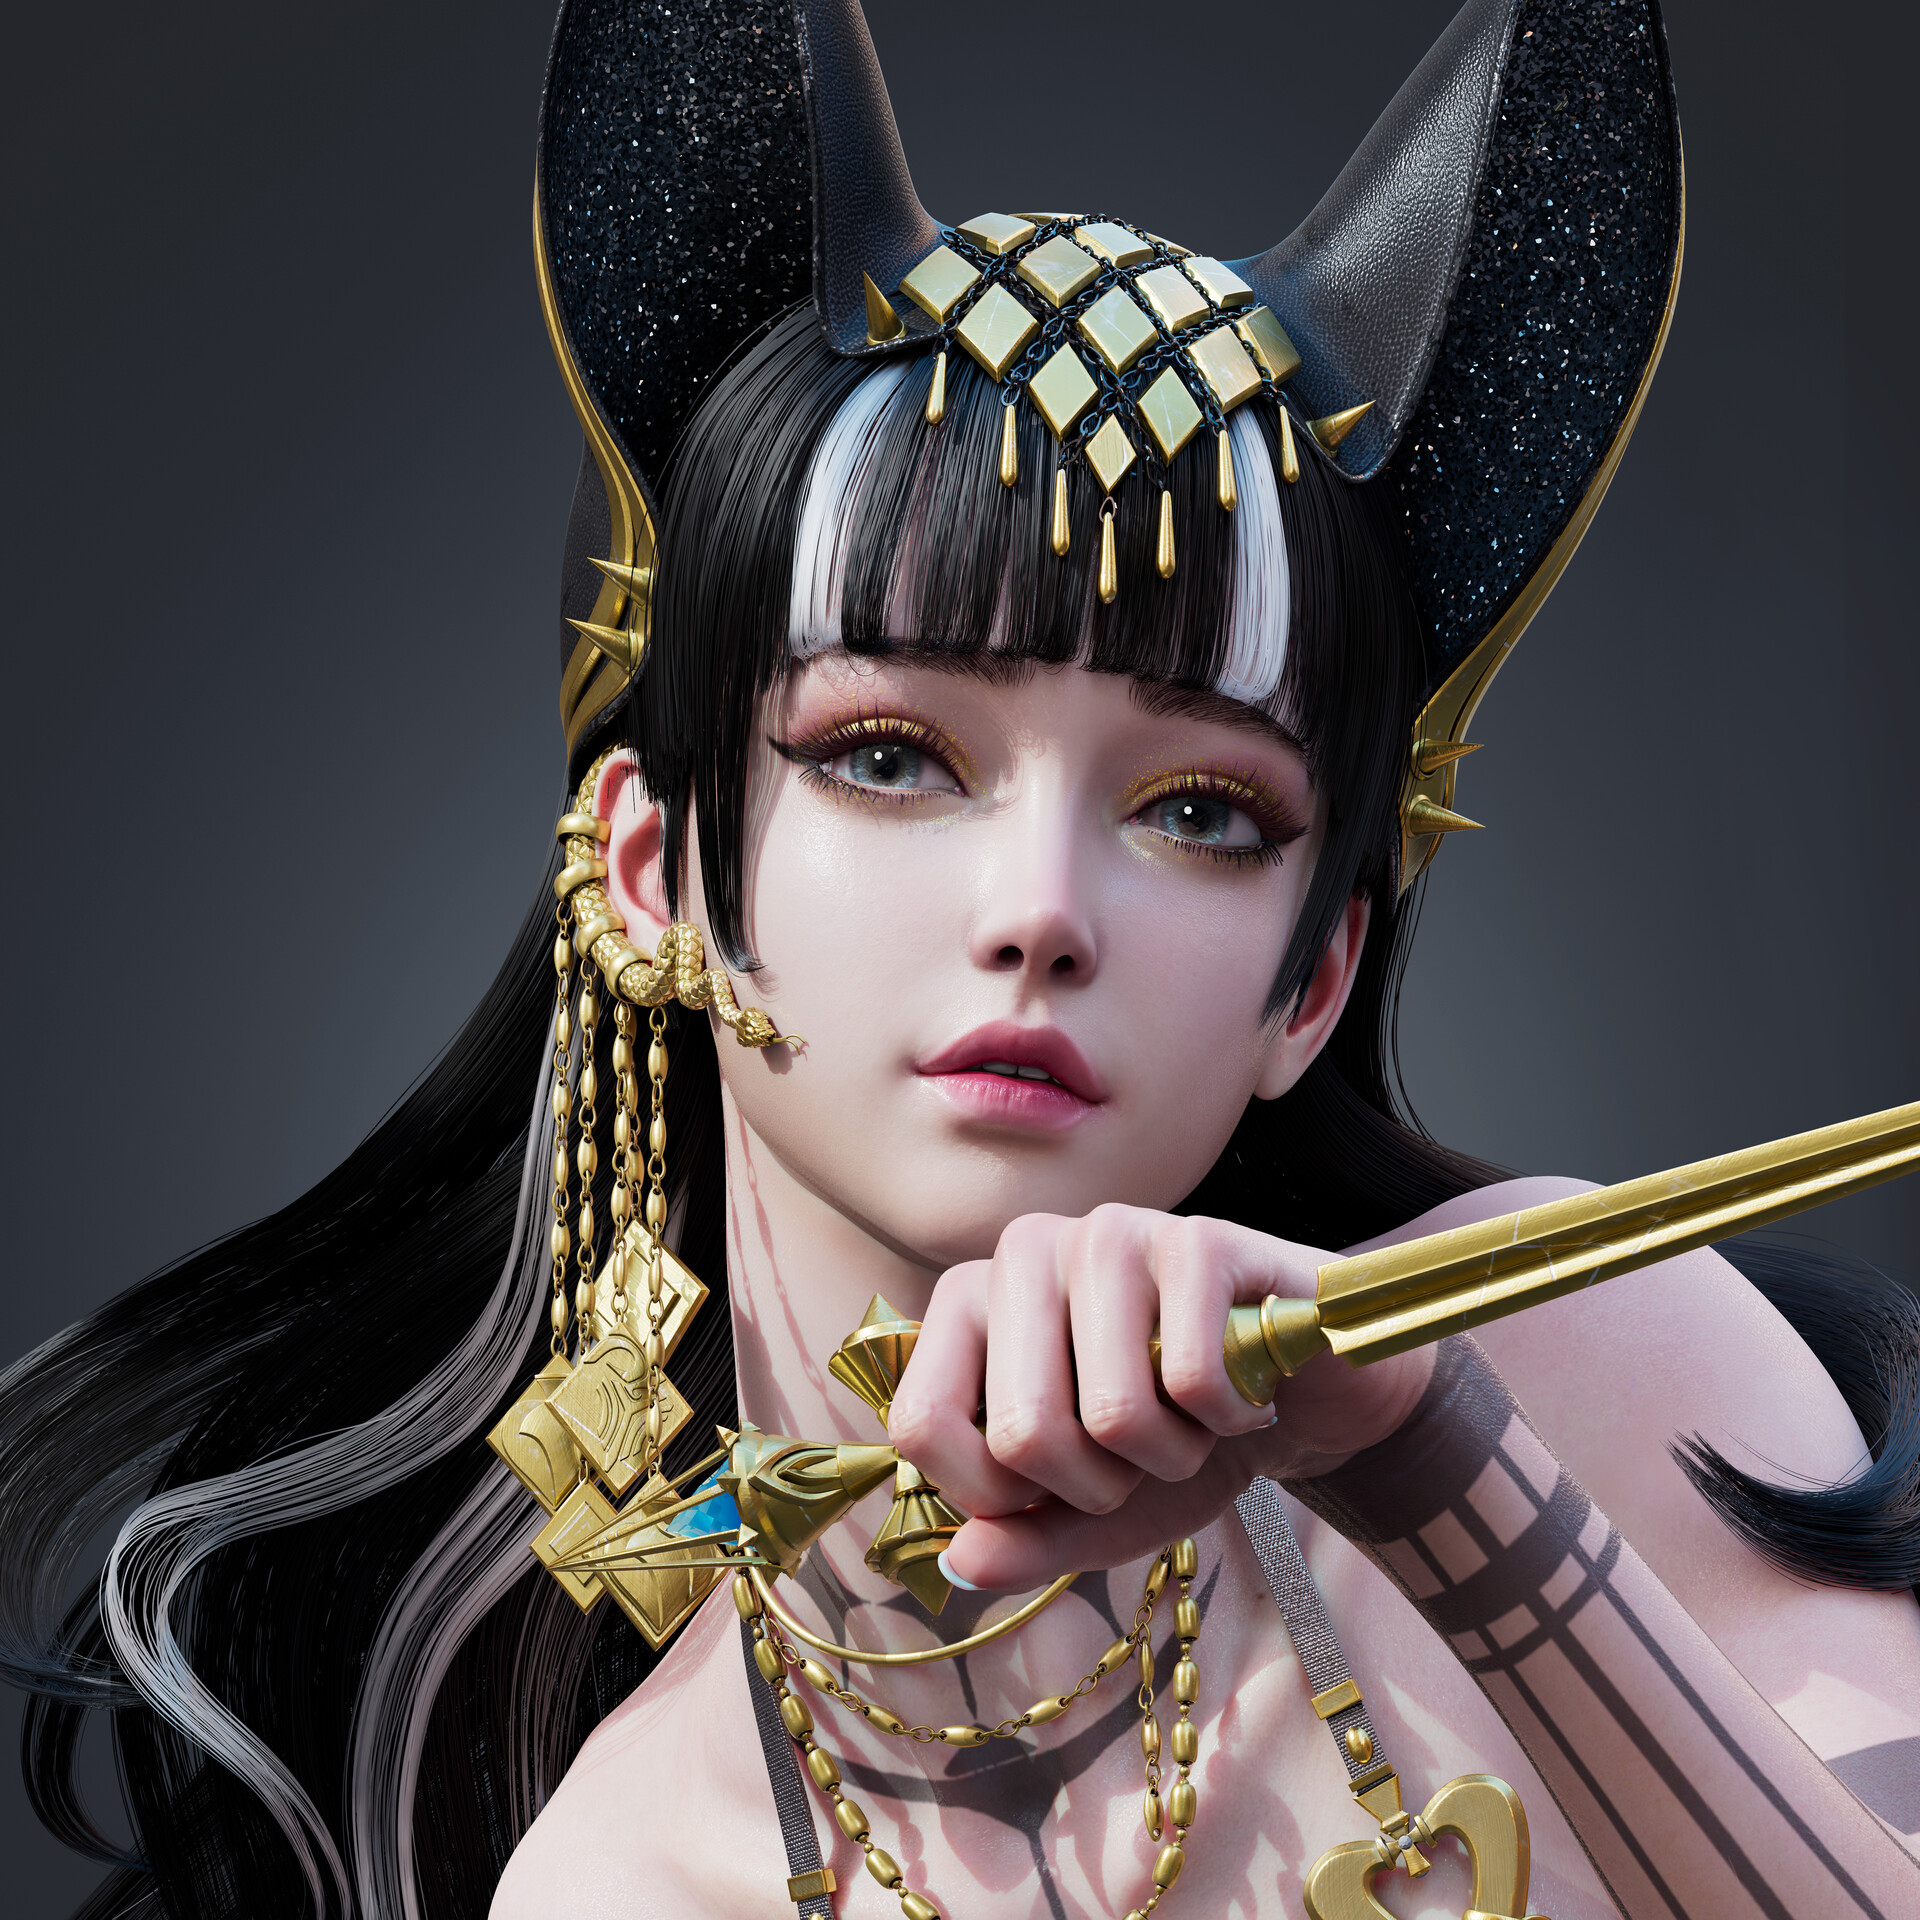 Tangqiuqiu CGi Women Dark Hair Long Hair Bangs Jewelry Hair Accessories Glamour Gold Weapon Dagger S 1920x1920